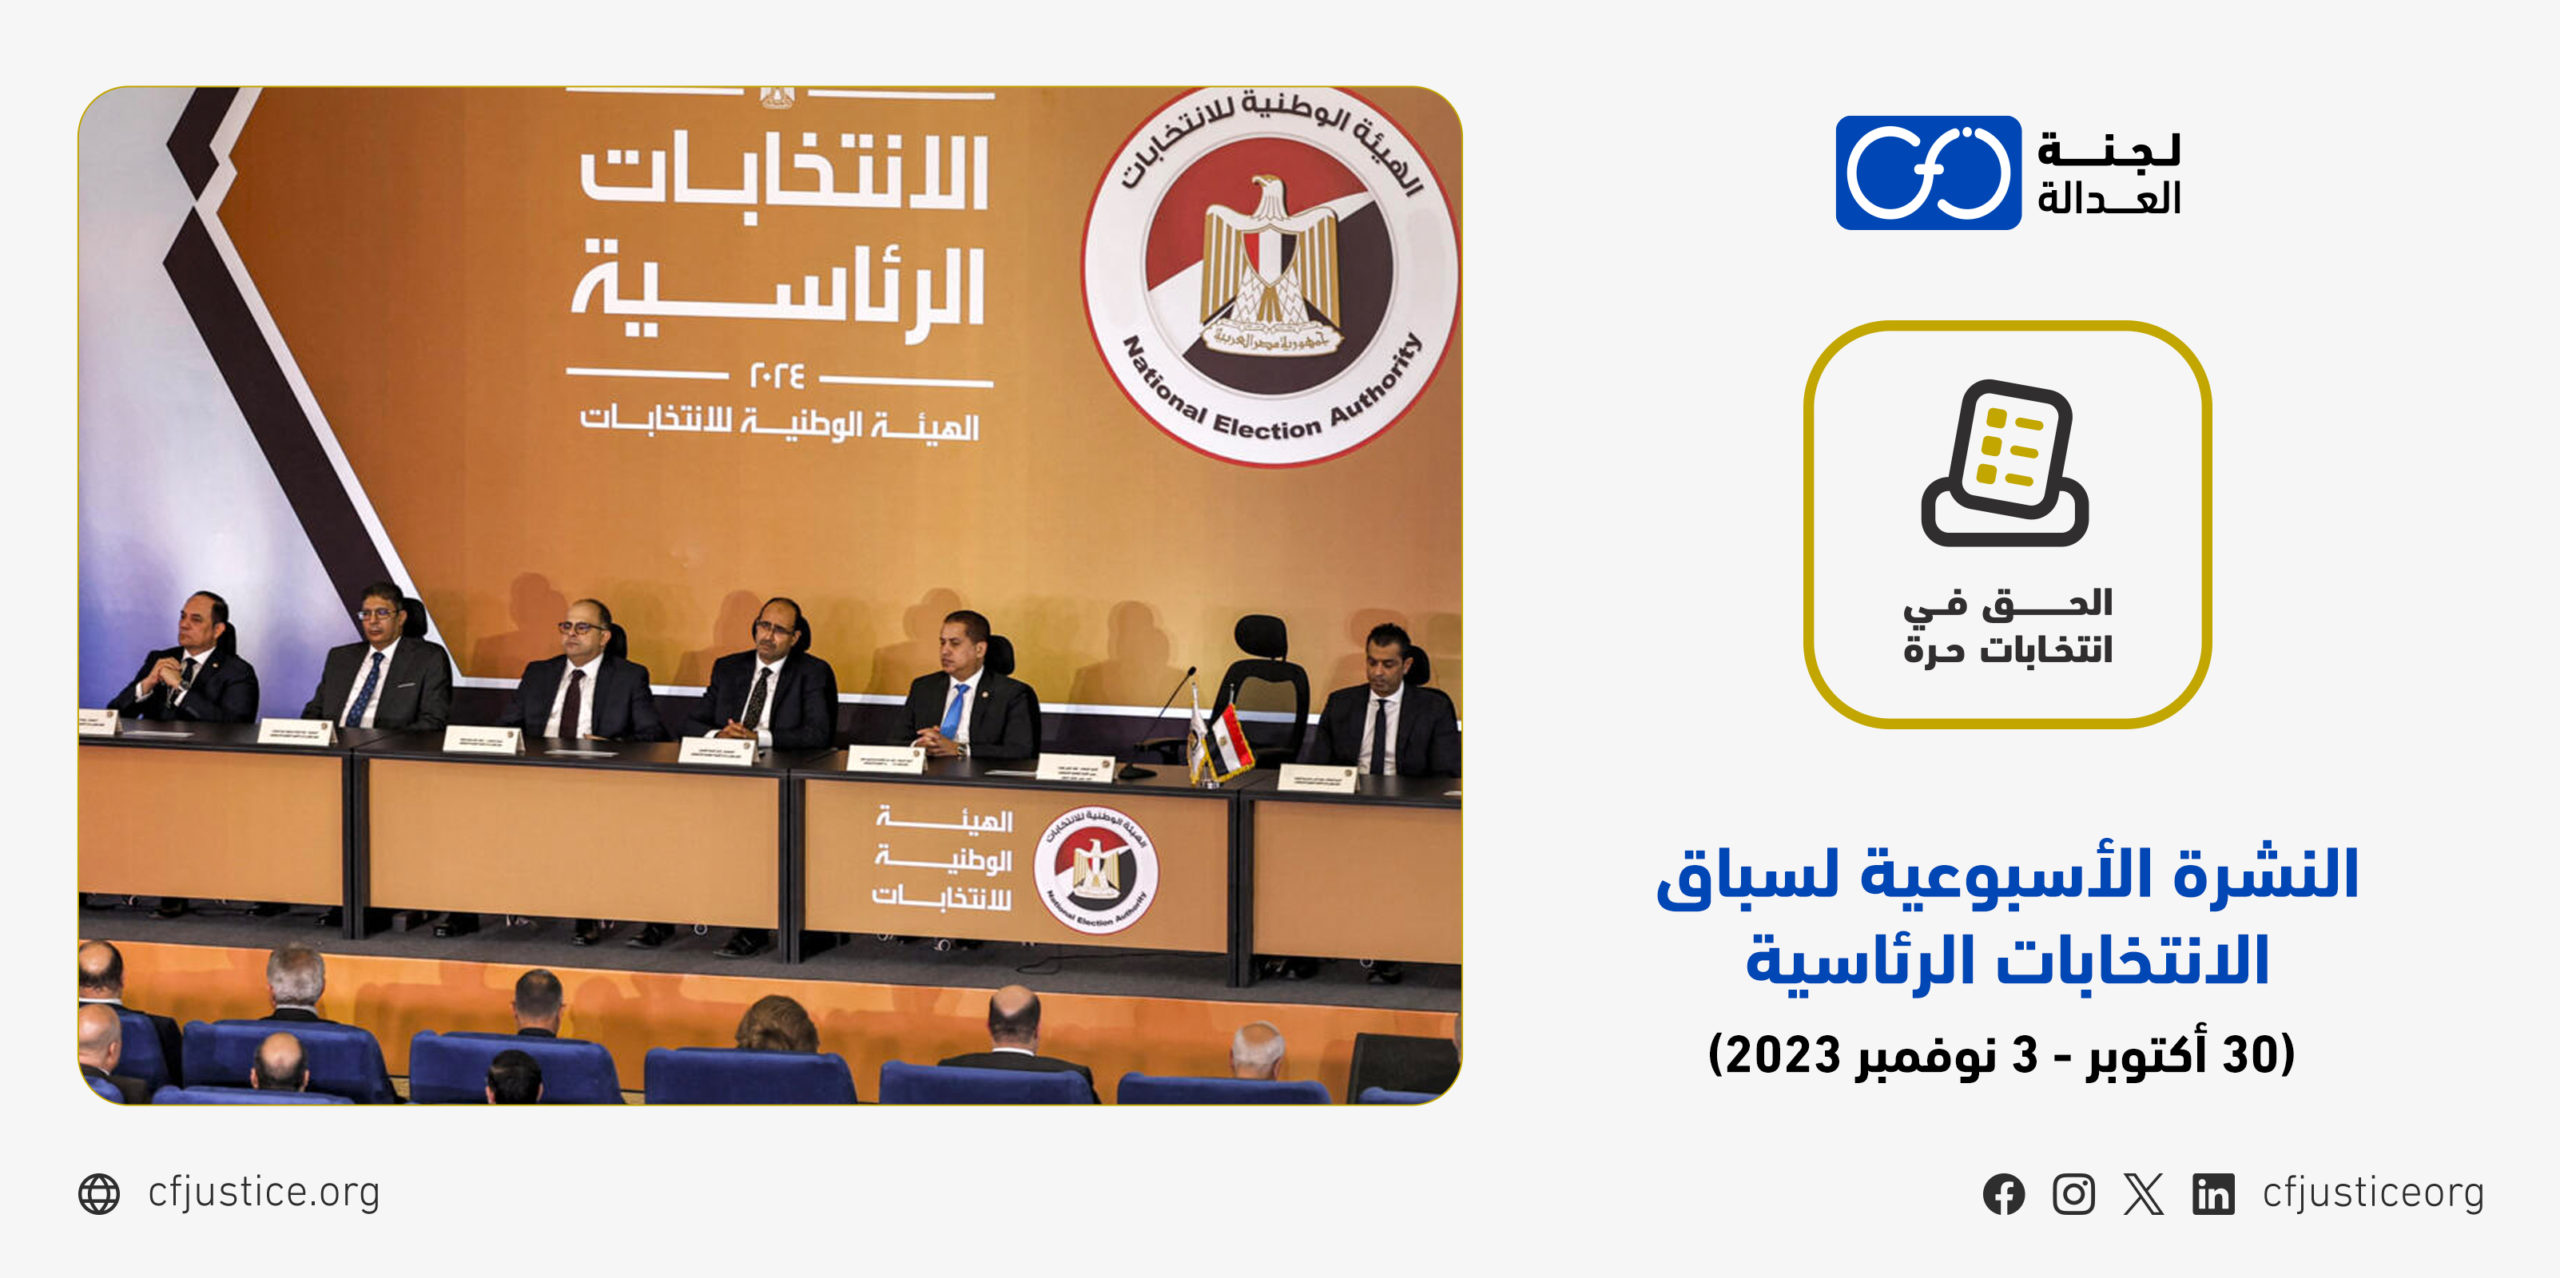 النشرة الأسبوعية لسباق الانتخابات الرئاسية المصرية 2024 خلال الفترة من  (30 أكتوبر حتى 3 نوفمبر 2023)